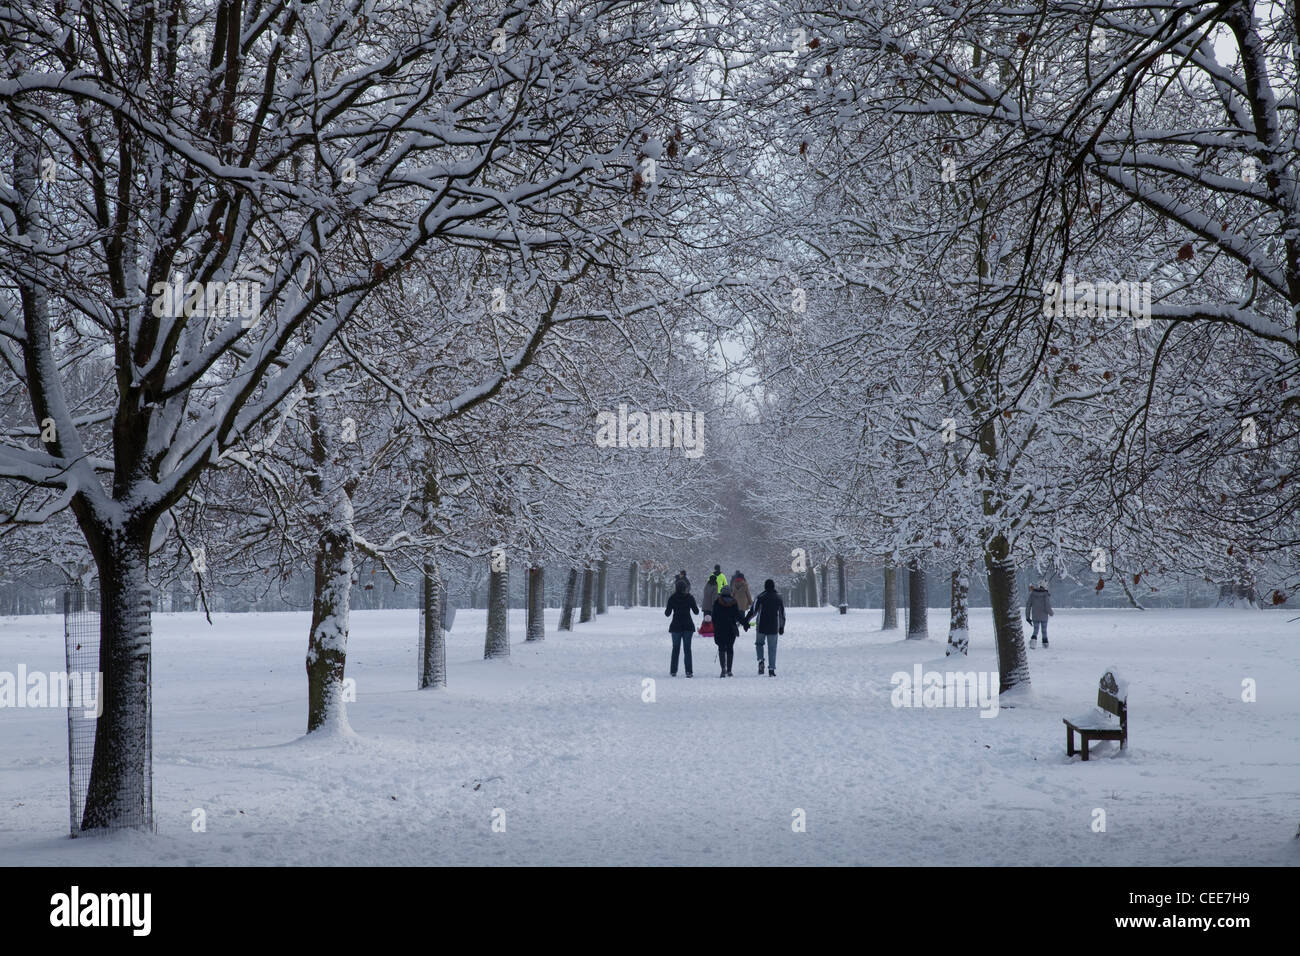 Famille marcher dans la neige à Nottingham Wollaton Park, Angleterre, Royaume-Uni Banque D'Images